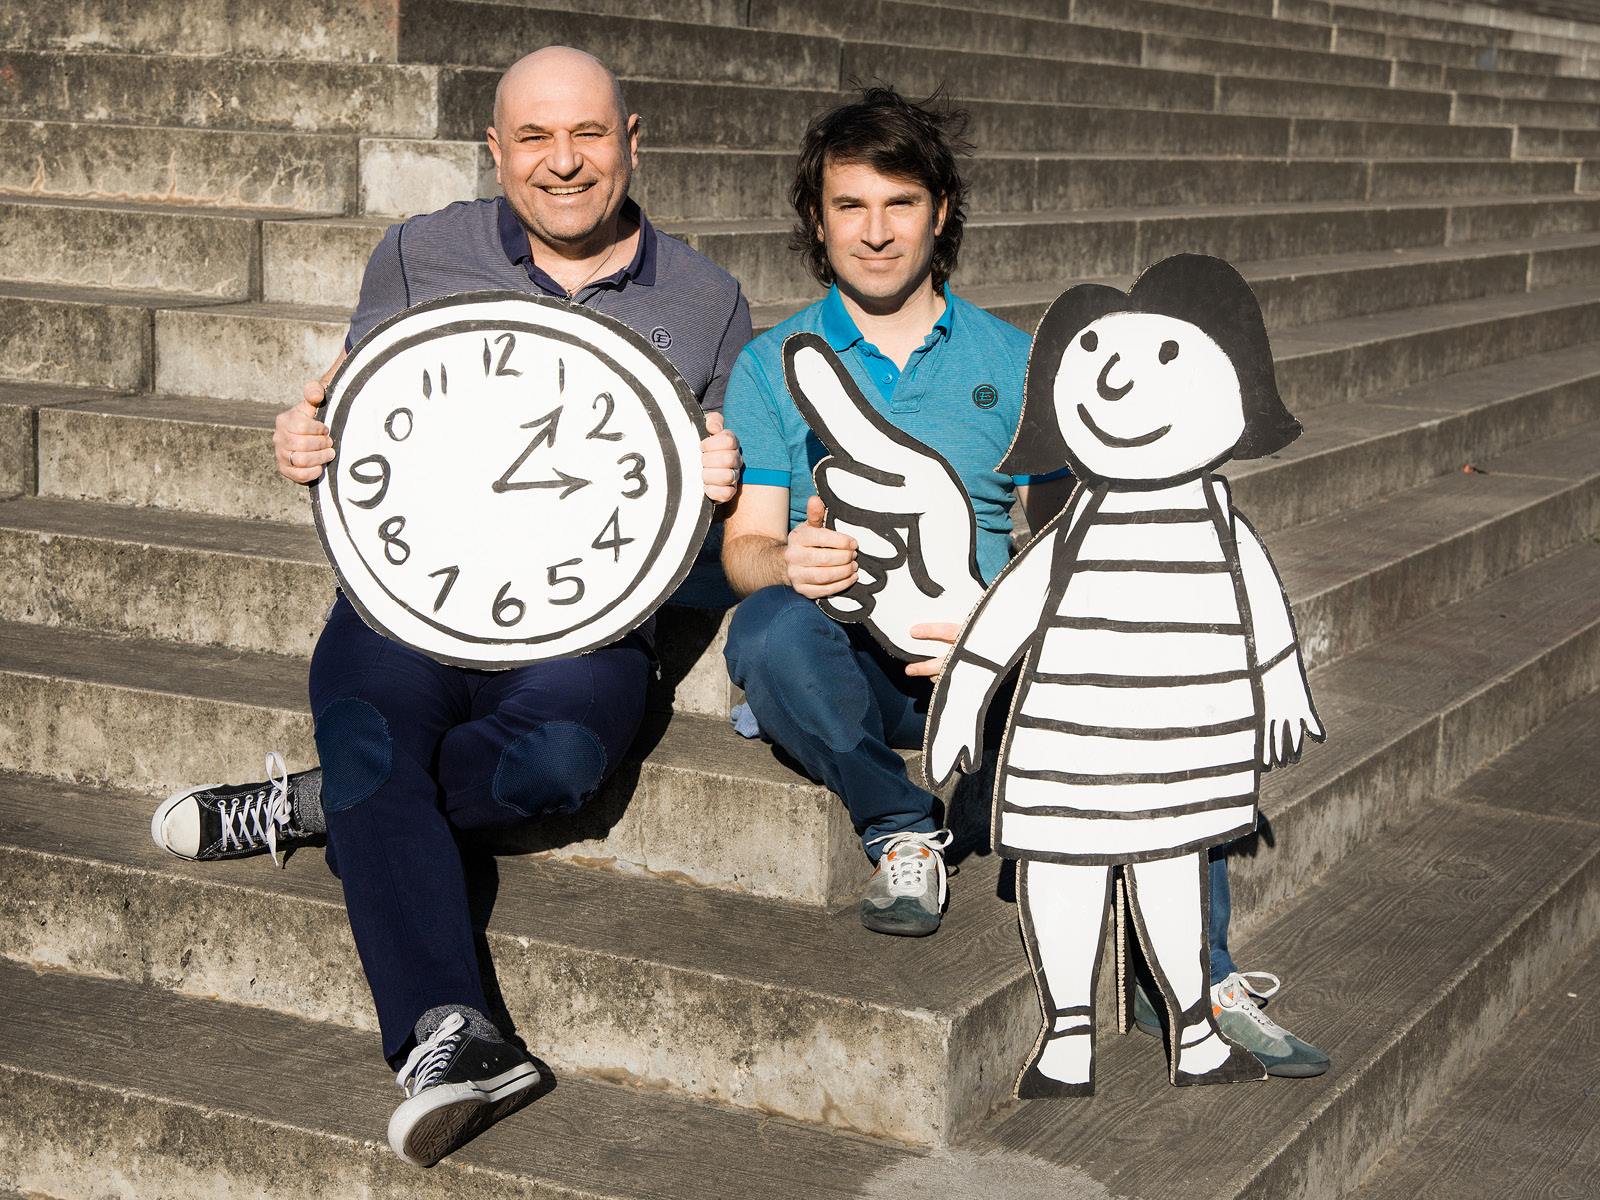 Zwei Spieler mit einer lebensgroßen Flachfigur und einer Uhr aus Papier auf Treppen sitzend.